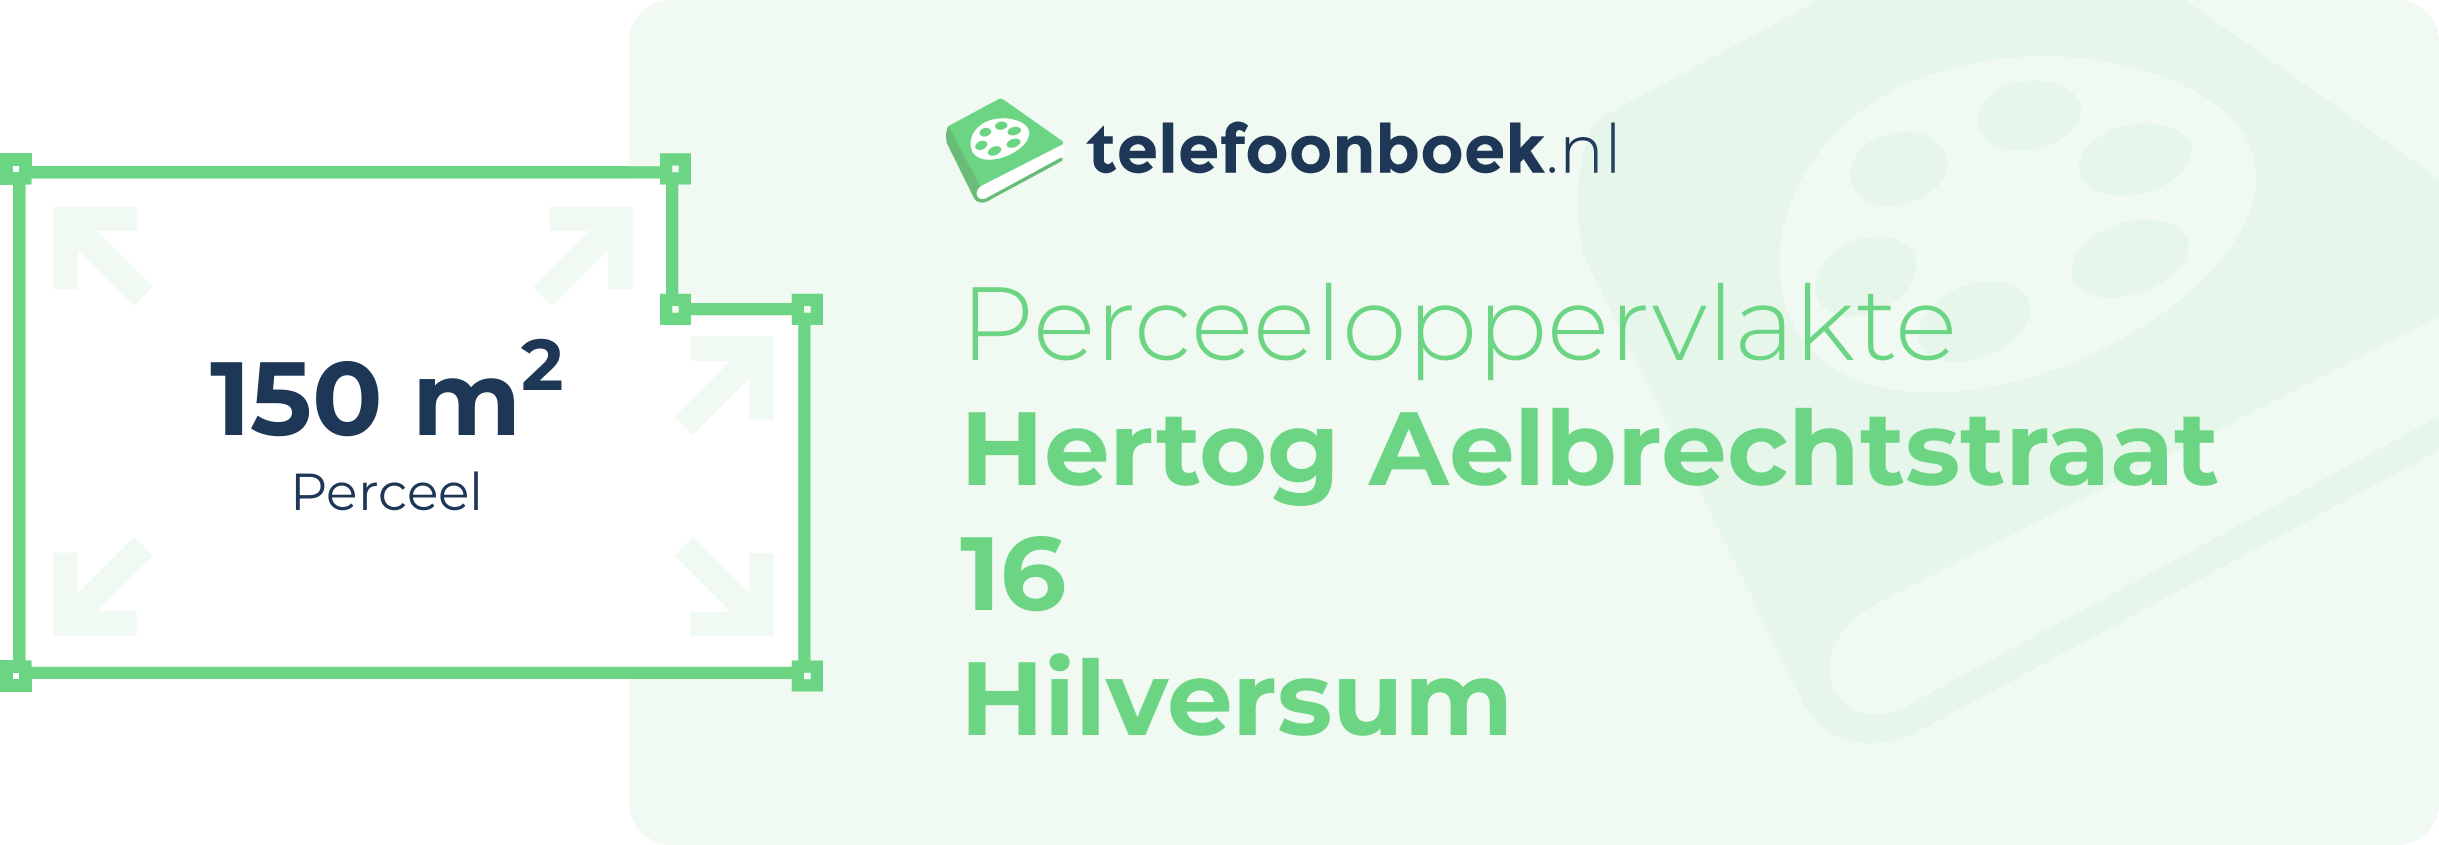 Perceeloppervlakte Hertog Aelbrechtstraat 16 Hilversum